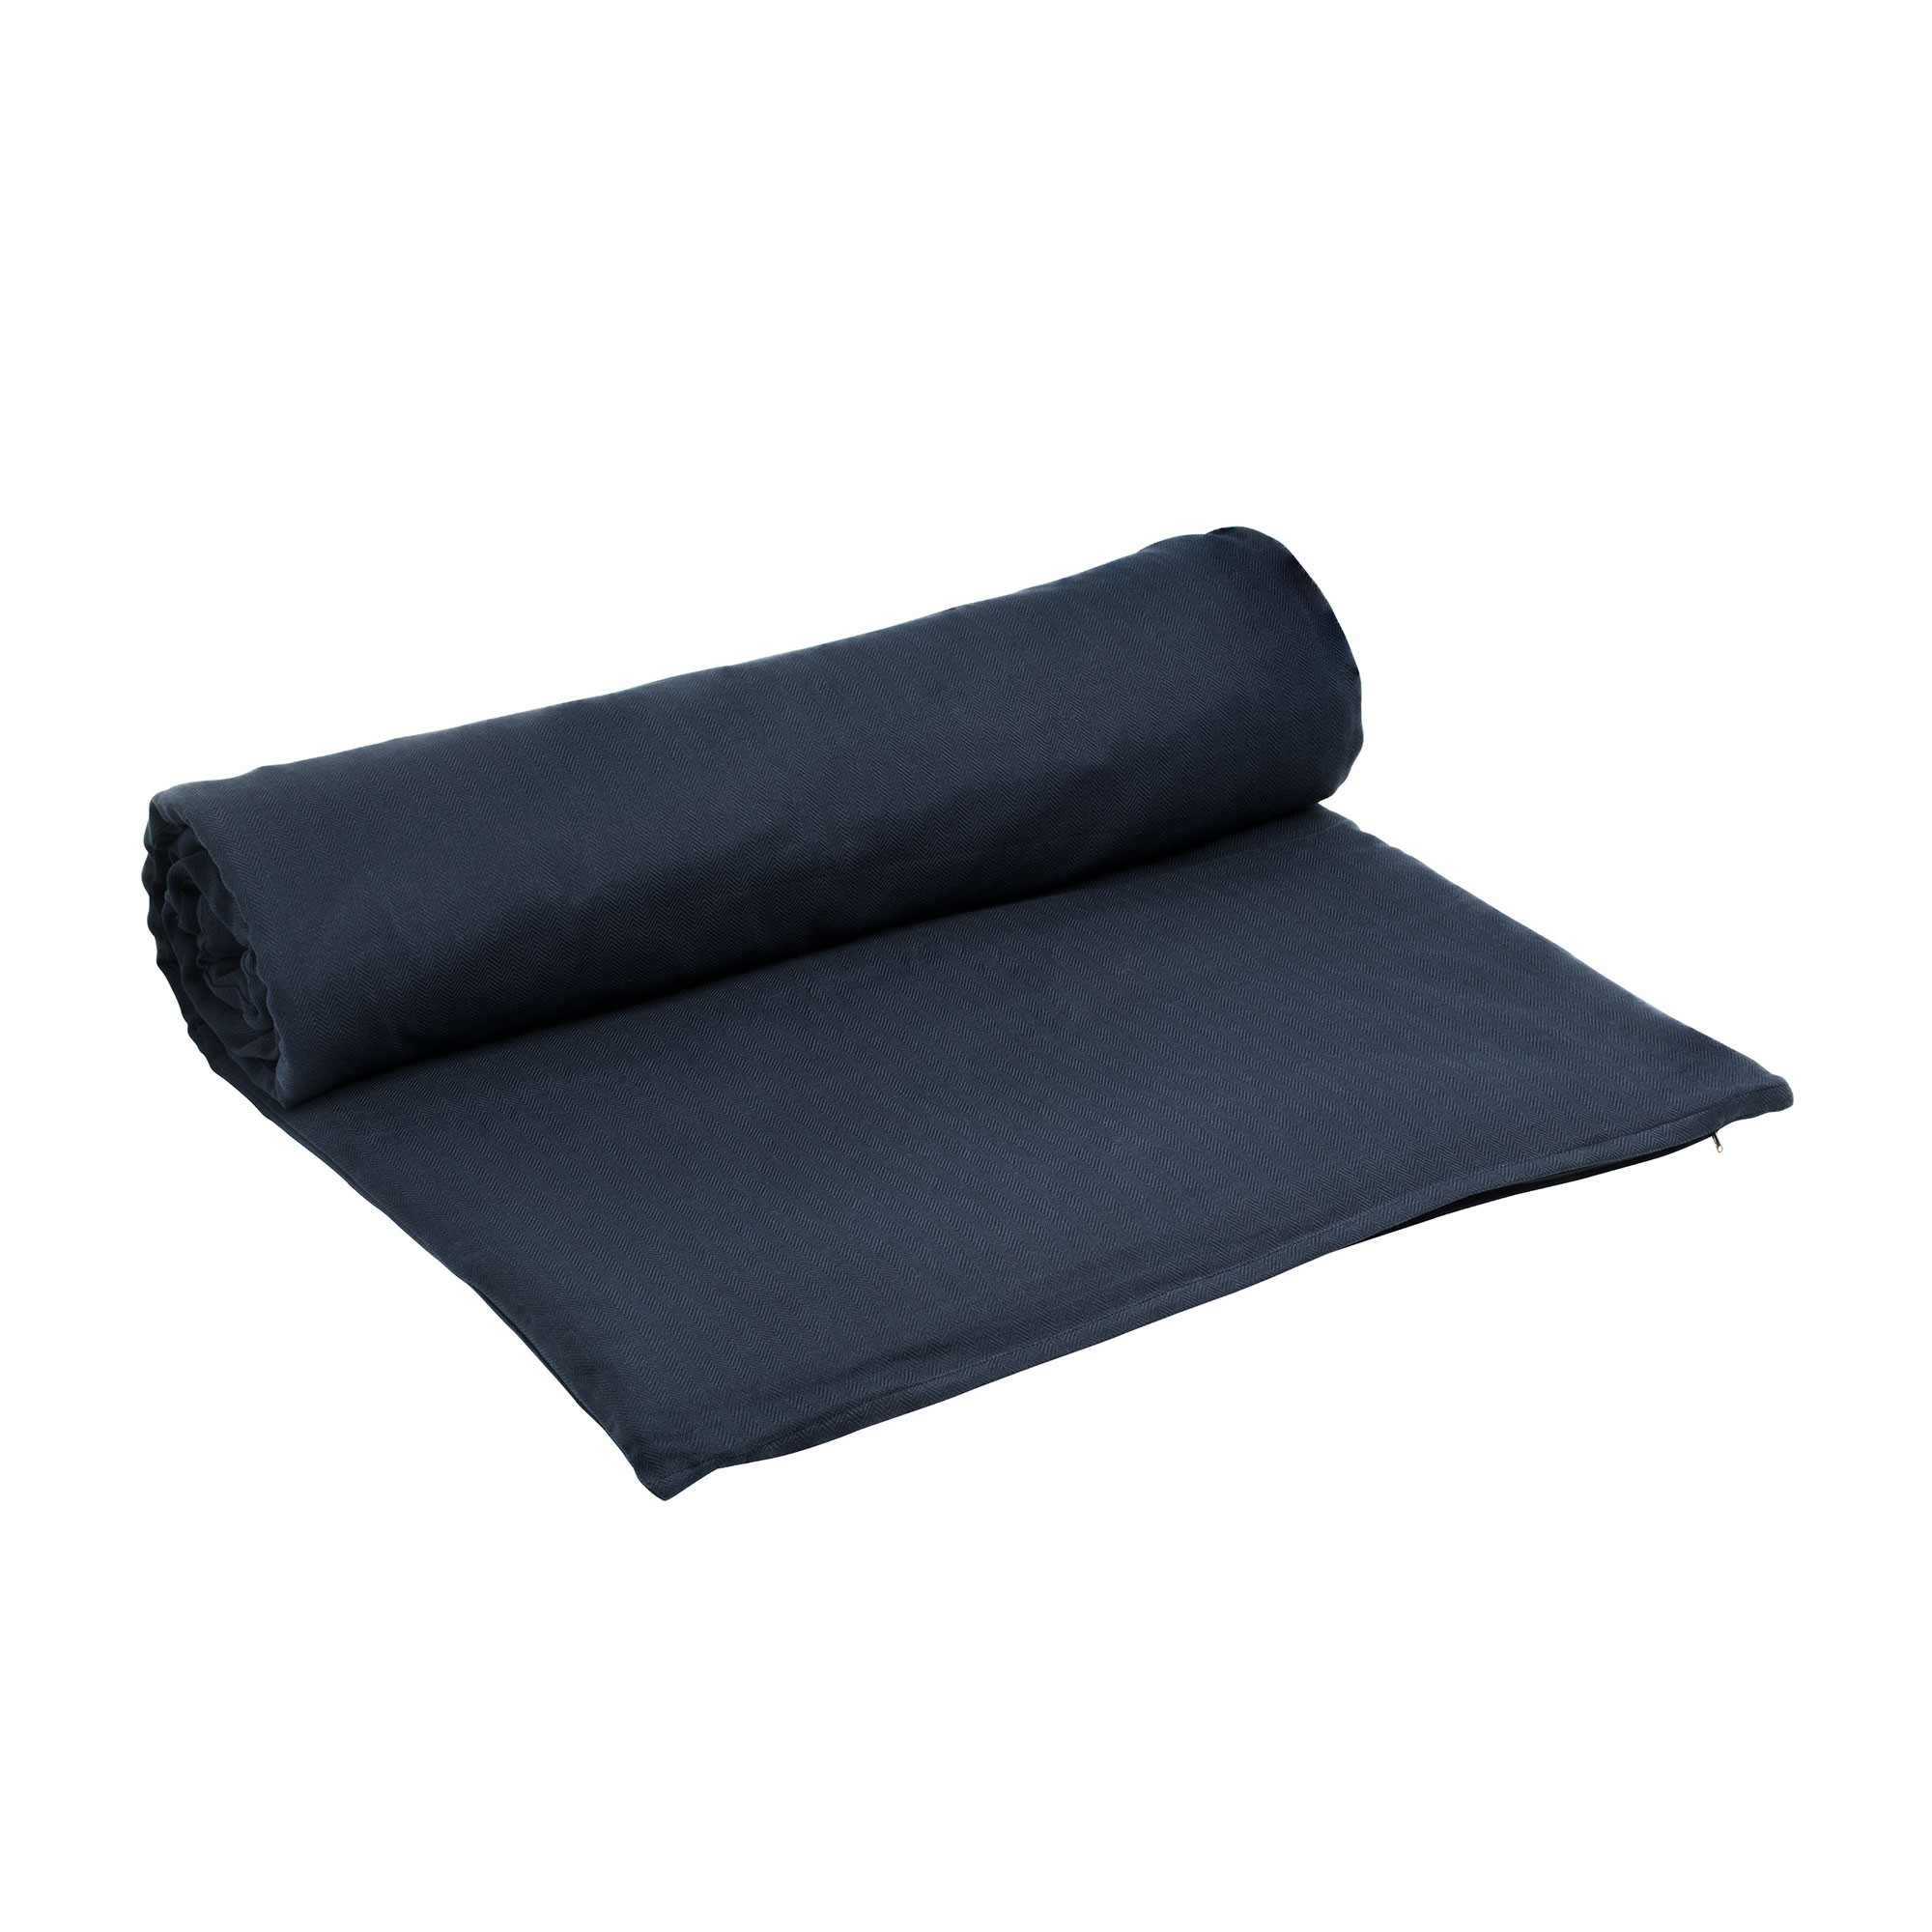 Buy Meditation Bundle - Cushion + Yoga Blanket + Soy Candle